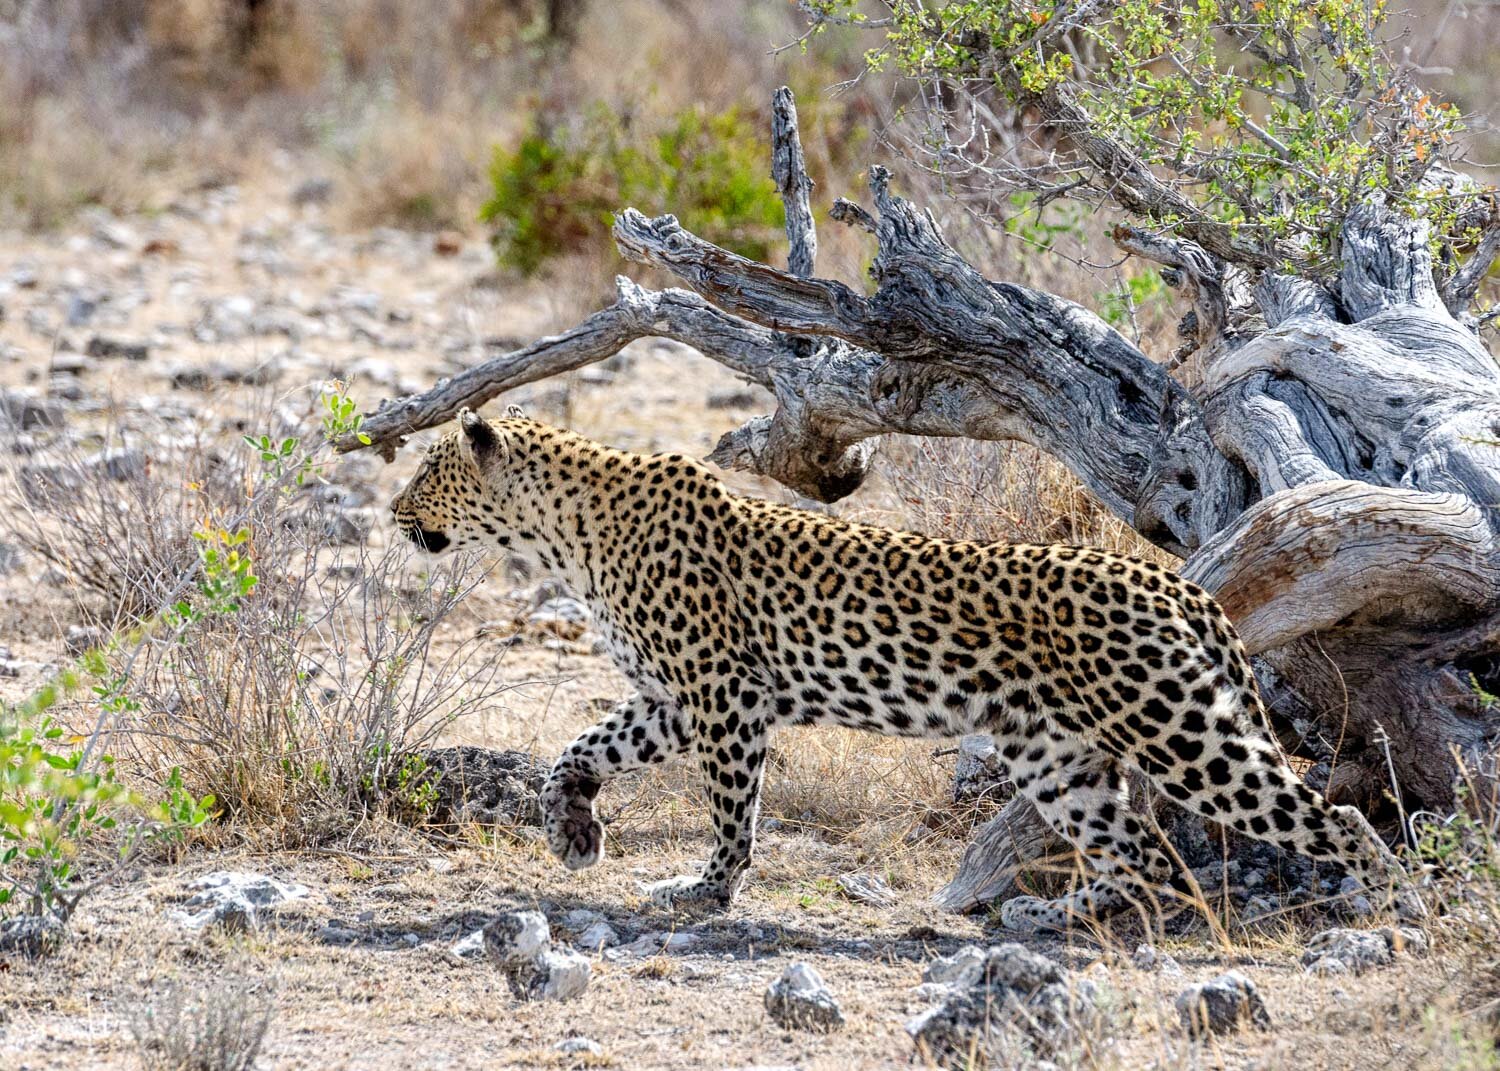 Leopard hunting Impala, Etosha National Park, Namibia